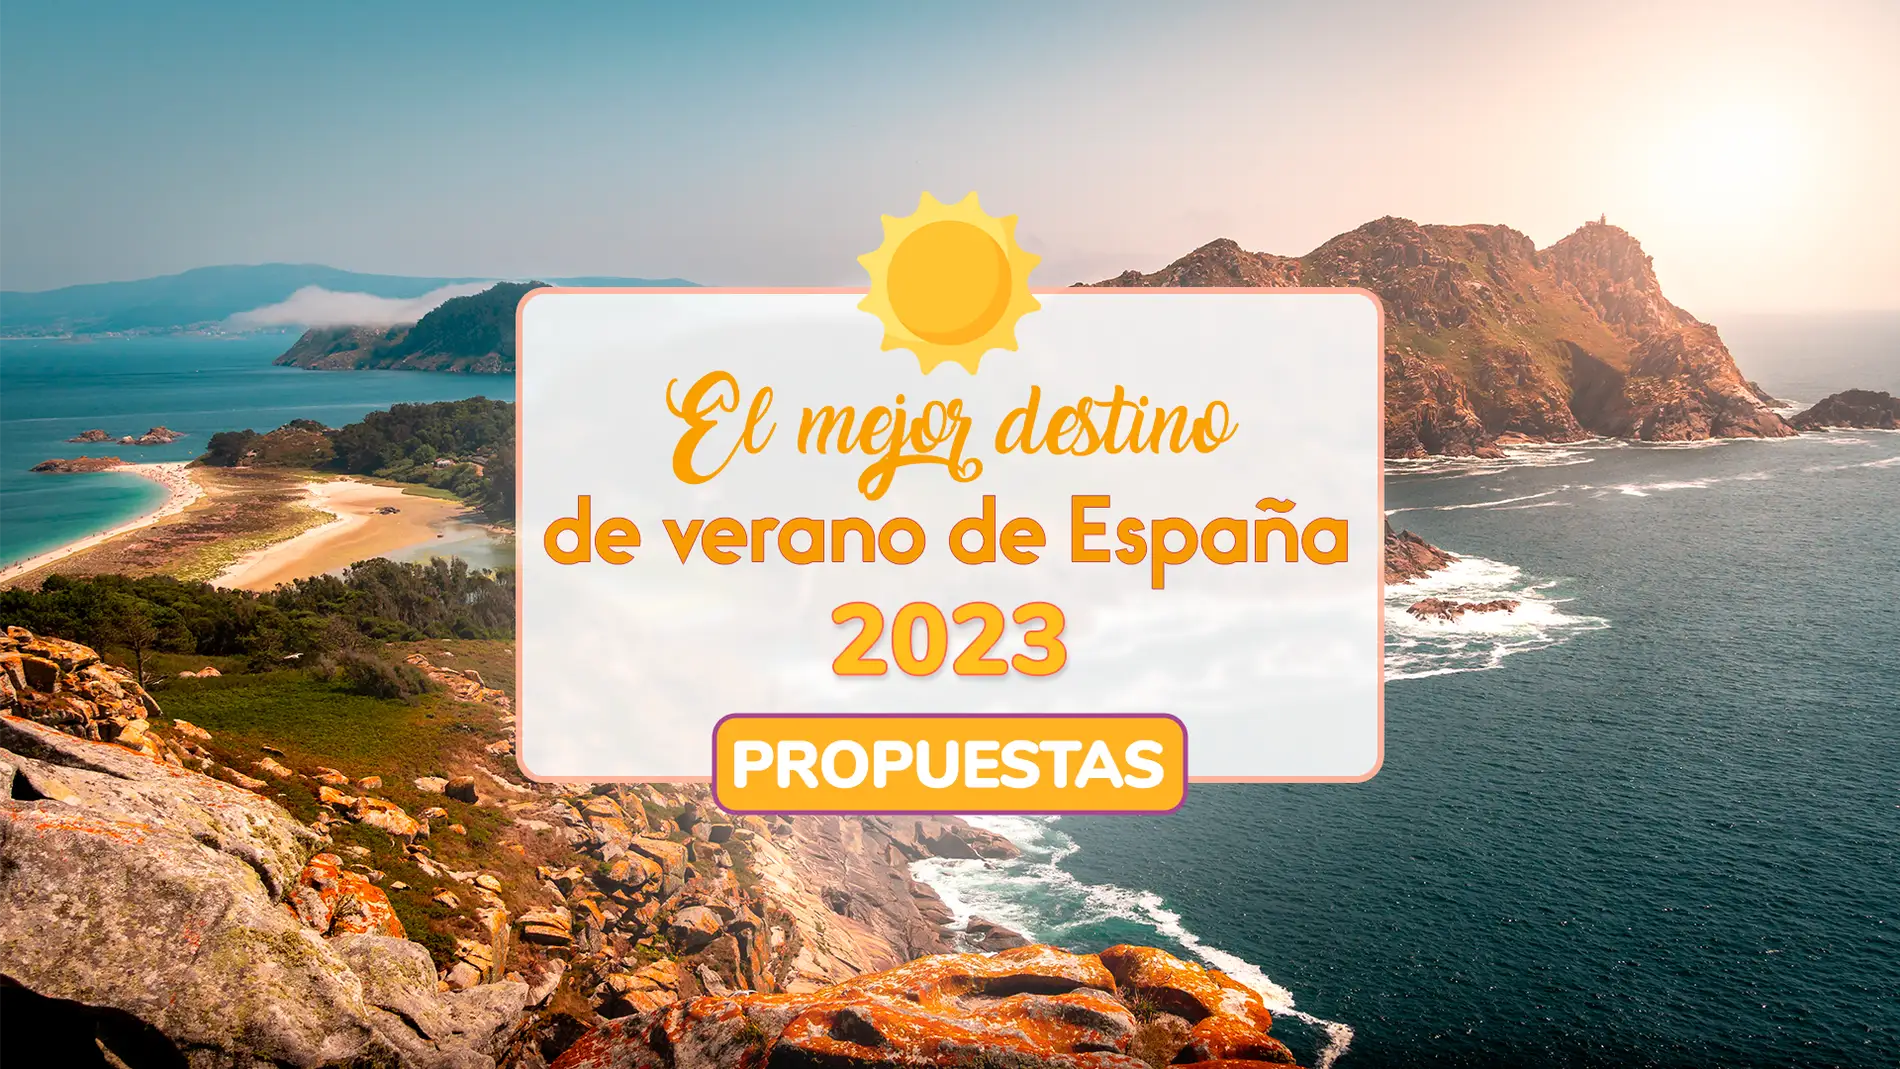 Propuestas para el mejor destino de verano de España 2023